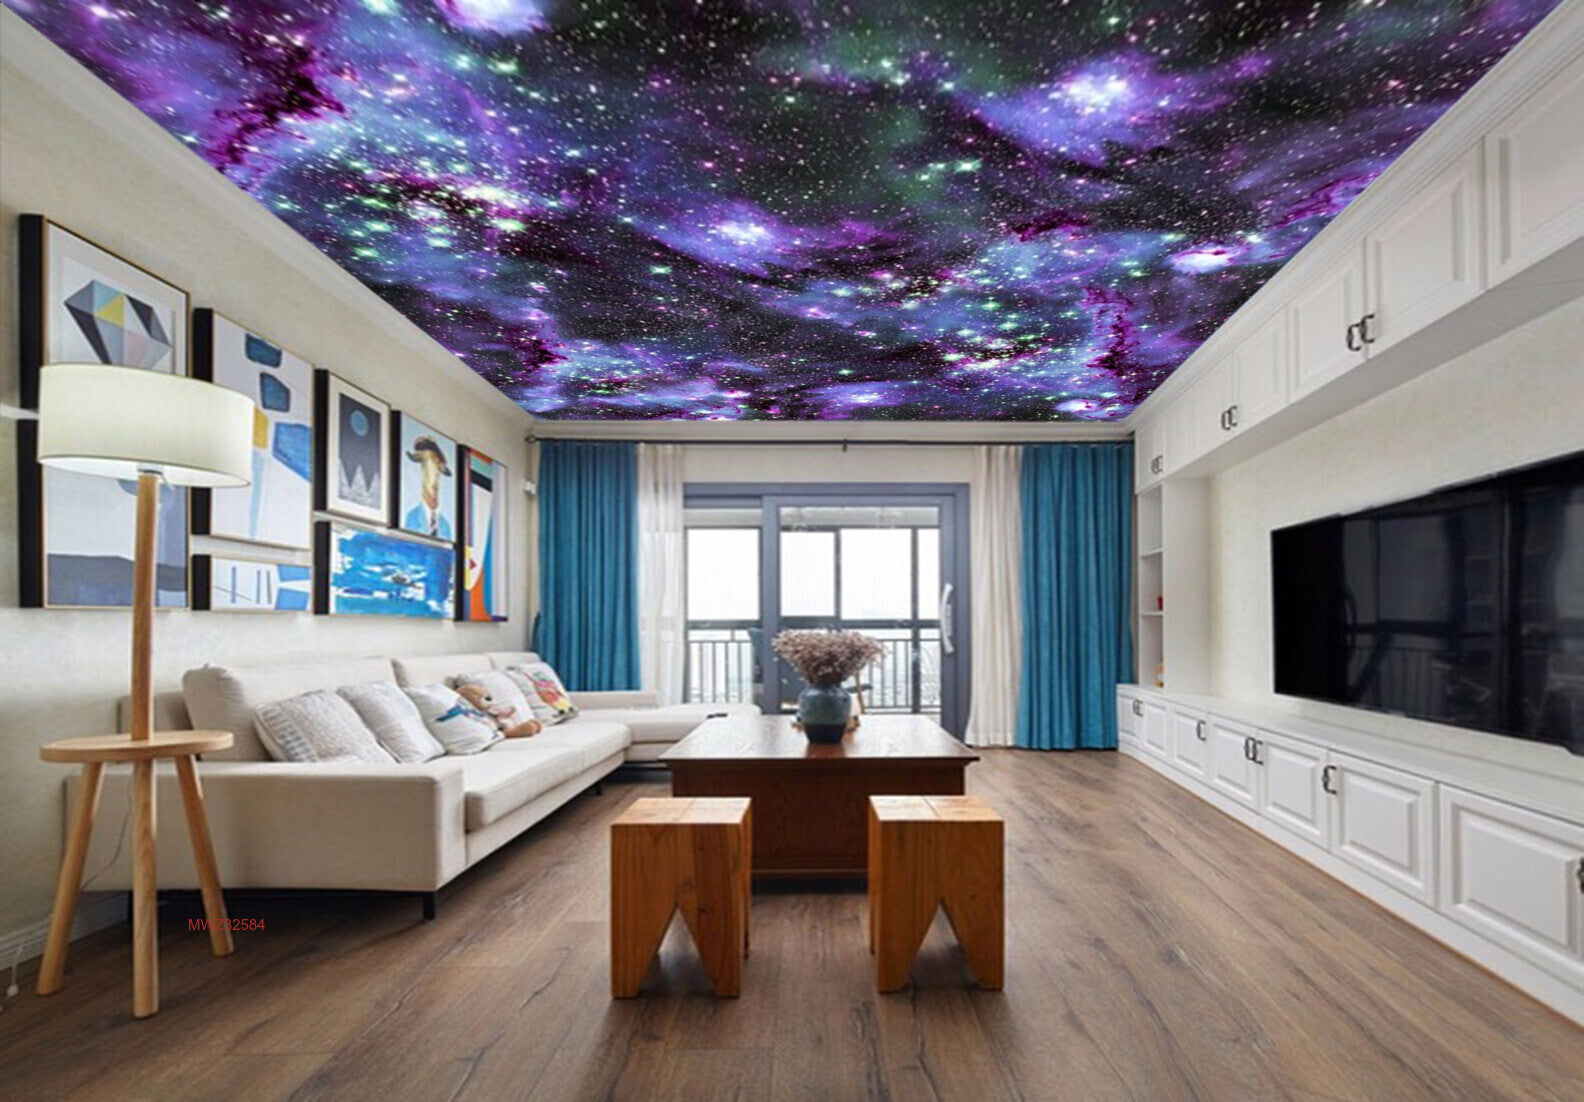 Avikalp MWZ3258 Stars Purple Galaxy HD Wallpaper for Ceiling